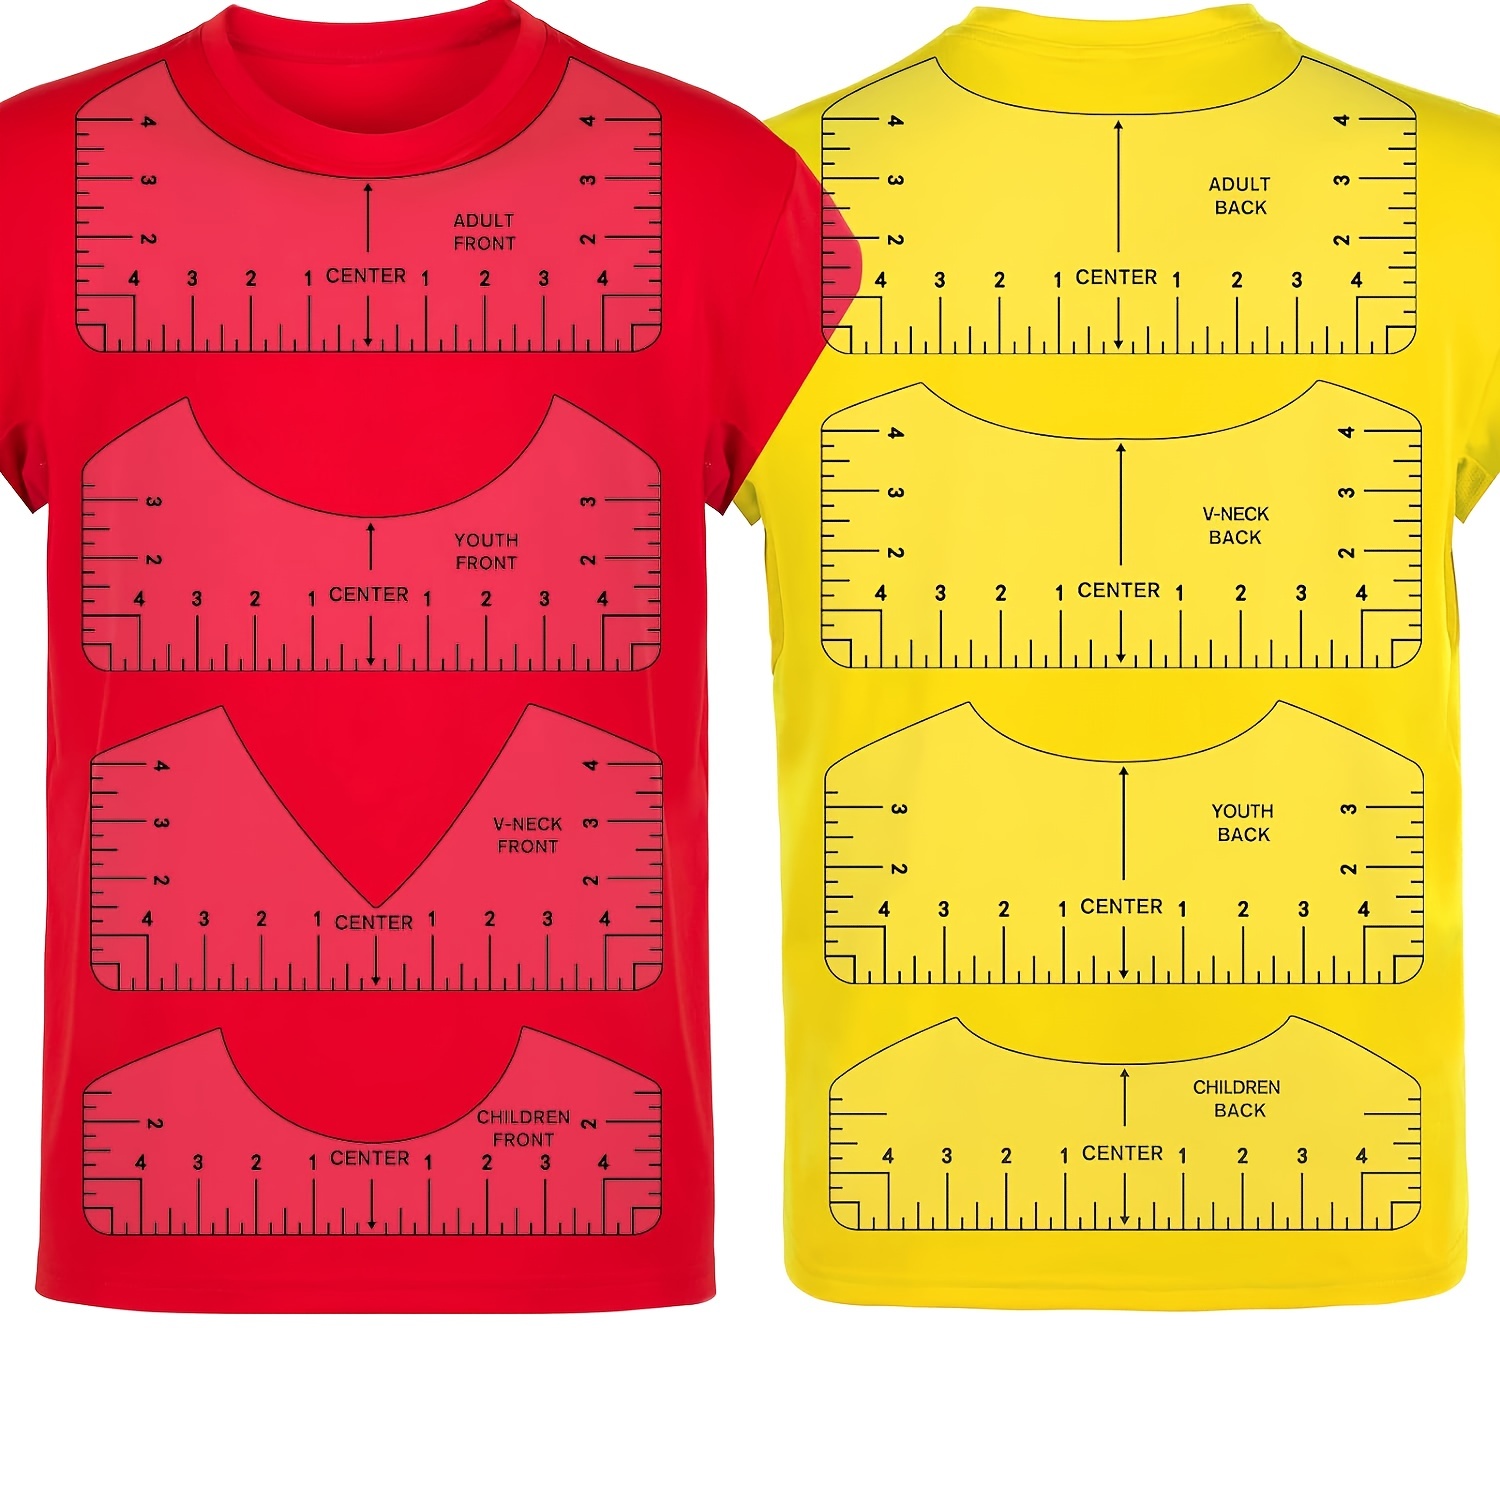  Tshirt Ruler Guide For Vinyl Alignment - T Shirt Ruler Guide  For Heat Press, Shirt Measurement Tool For Heat Press, T-Shirt Ruler  Centering Guide